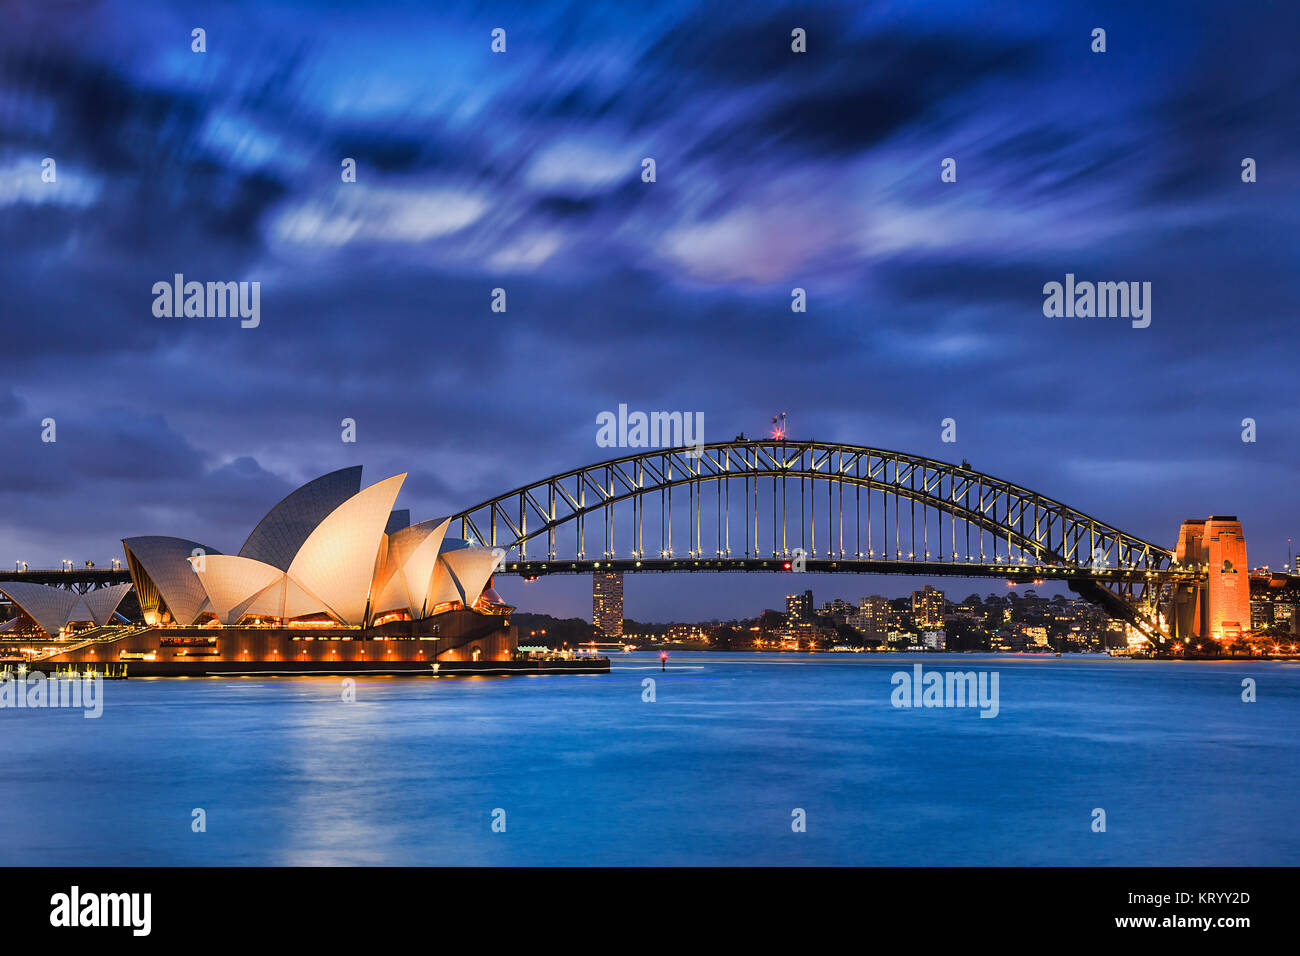 Sydney, Australia, el 18 de marzo de 2017: la mundialmente famosa Sydney Opera House y el puente Harbour al atardecer. Nubes borrosa y las luces de monumentos reflejan en blur Foto de stock